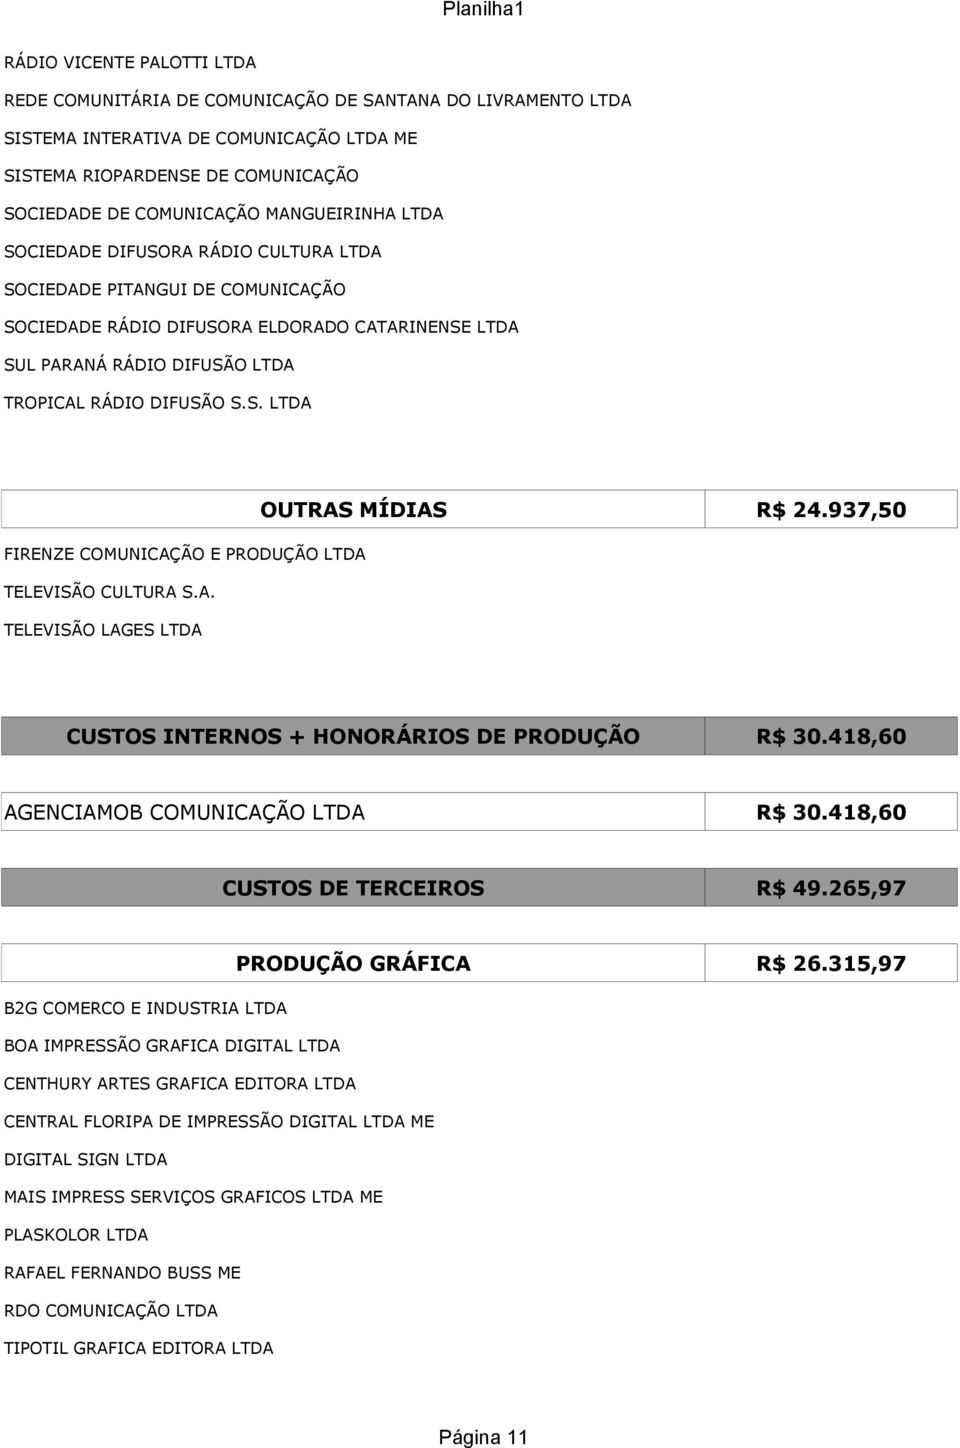 937,50 FIRENZE COMUNICAÇÃO E PRODUÇÃO LTDA TELEVISÃO CULTURA S.A. TELEVISÃO LAGES LTDA CUSTOS INTERNOS + HONORÁRIOS DE PRODUÇÃO R$ 30.418,60 AGENCIAMOB COMUNICAÇÃO LTDA R$ 30.